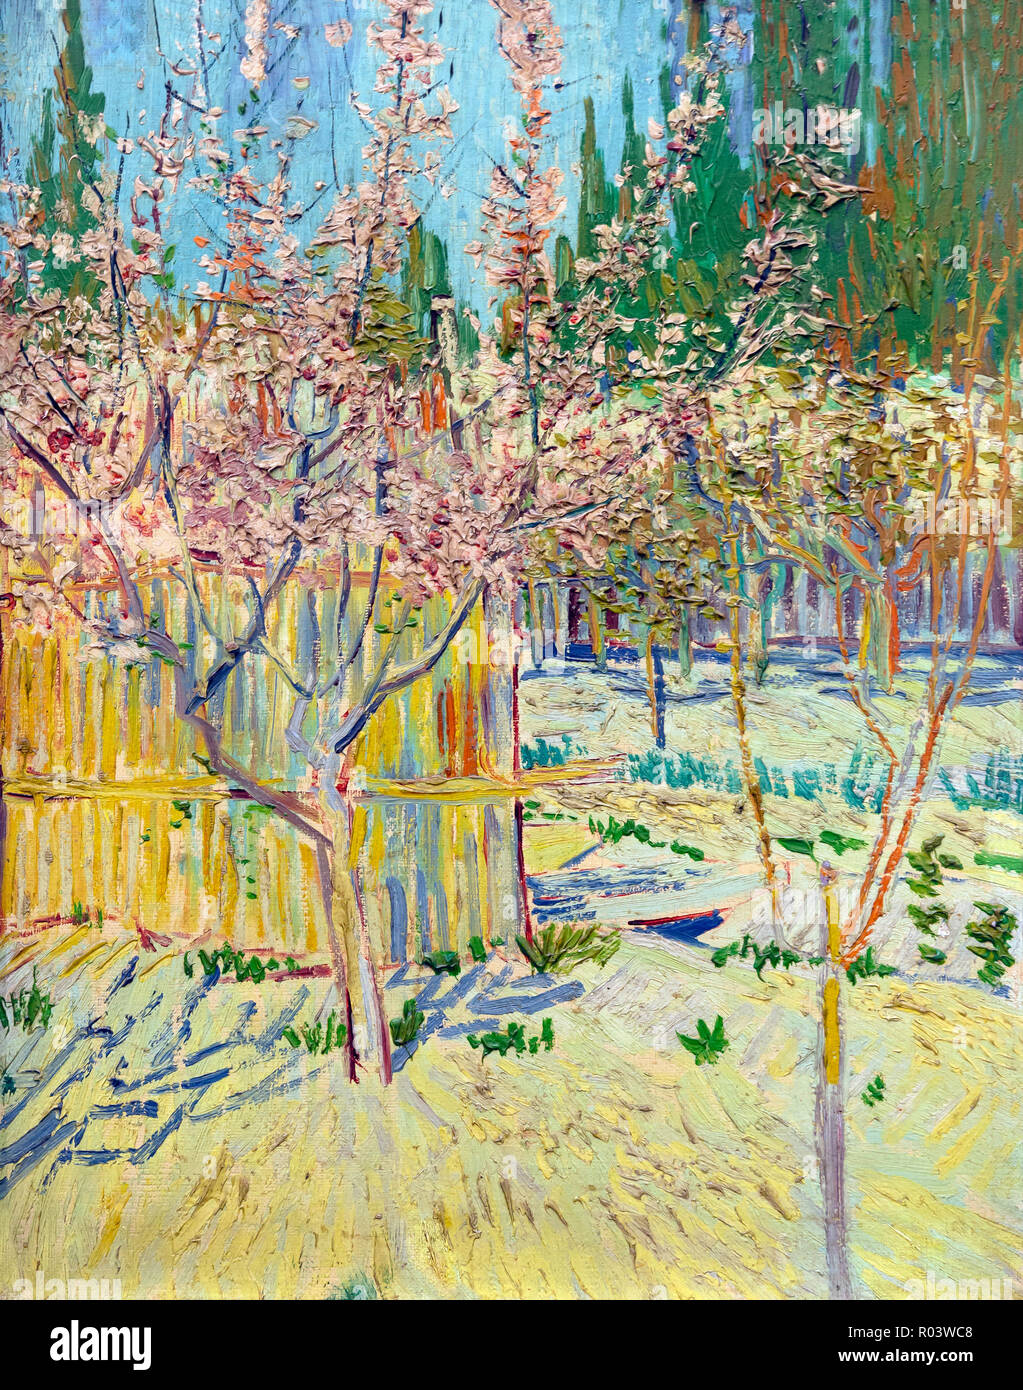 Les abricotiers en fleurs, Vincent van Gogh, 1888, Kunsthaus Zurich, Zurich, Switzerland, Europe Banque D'Images